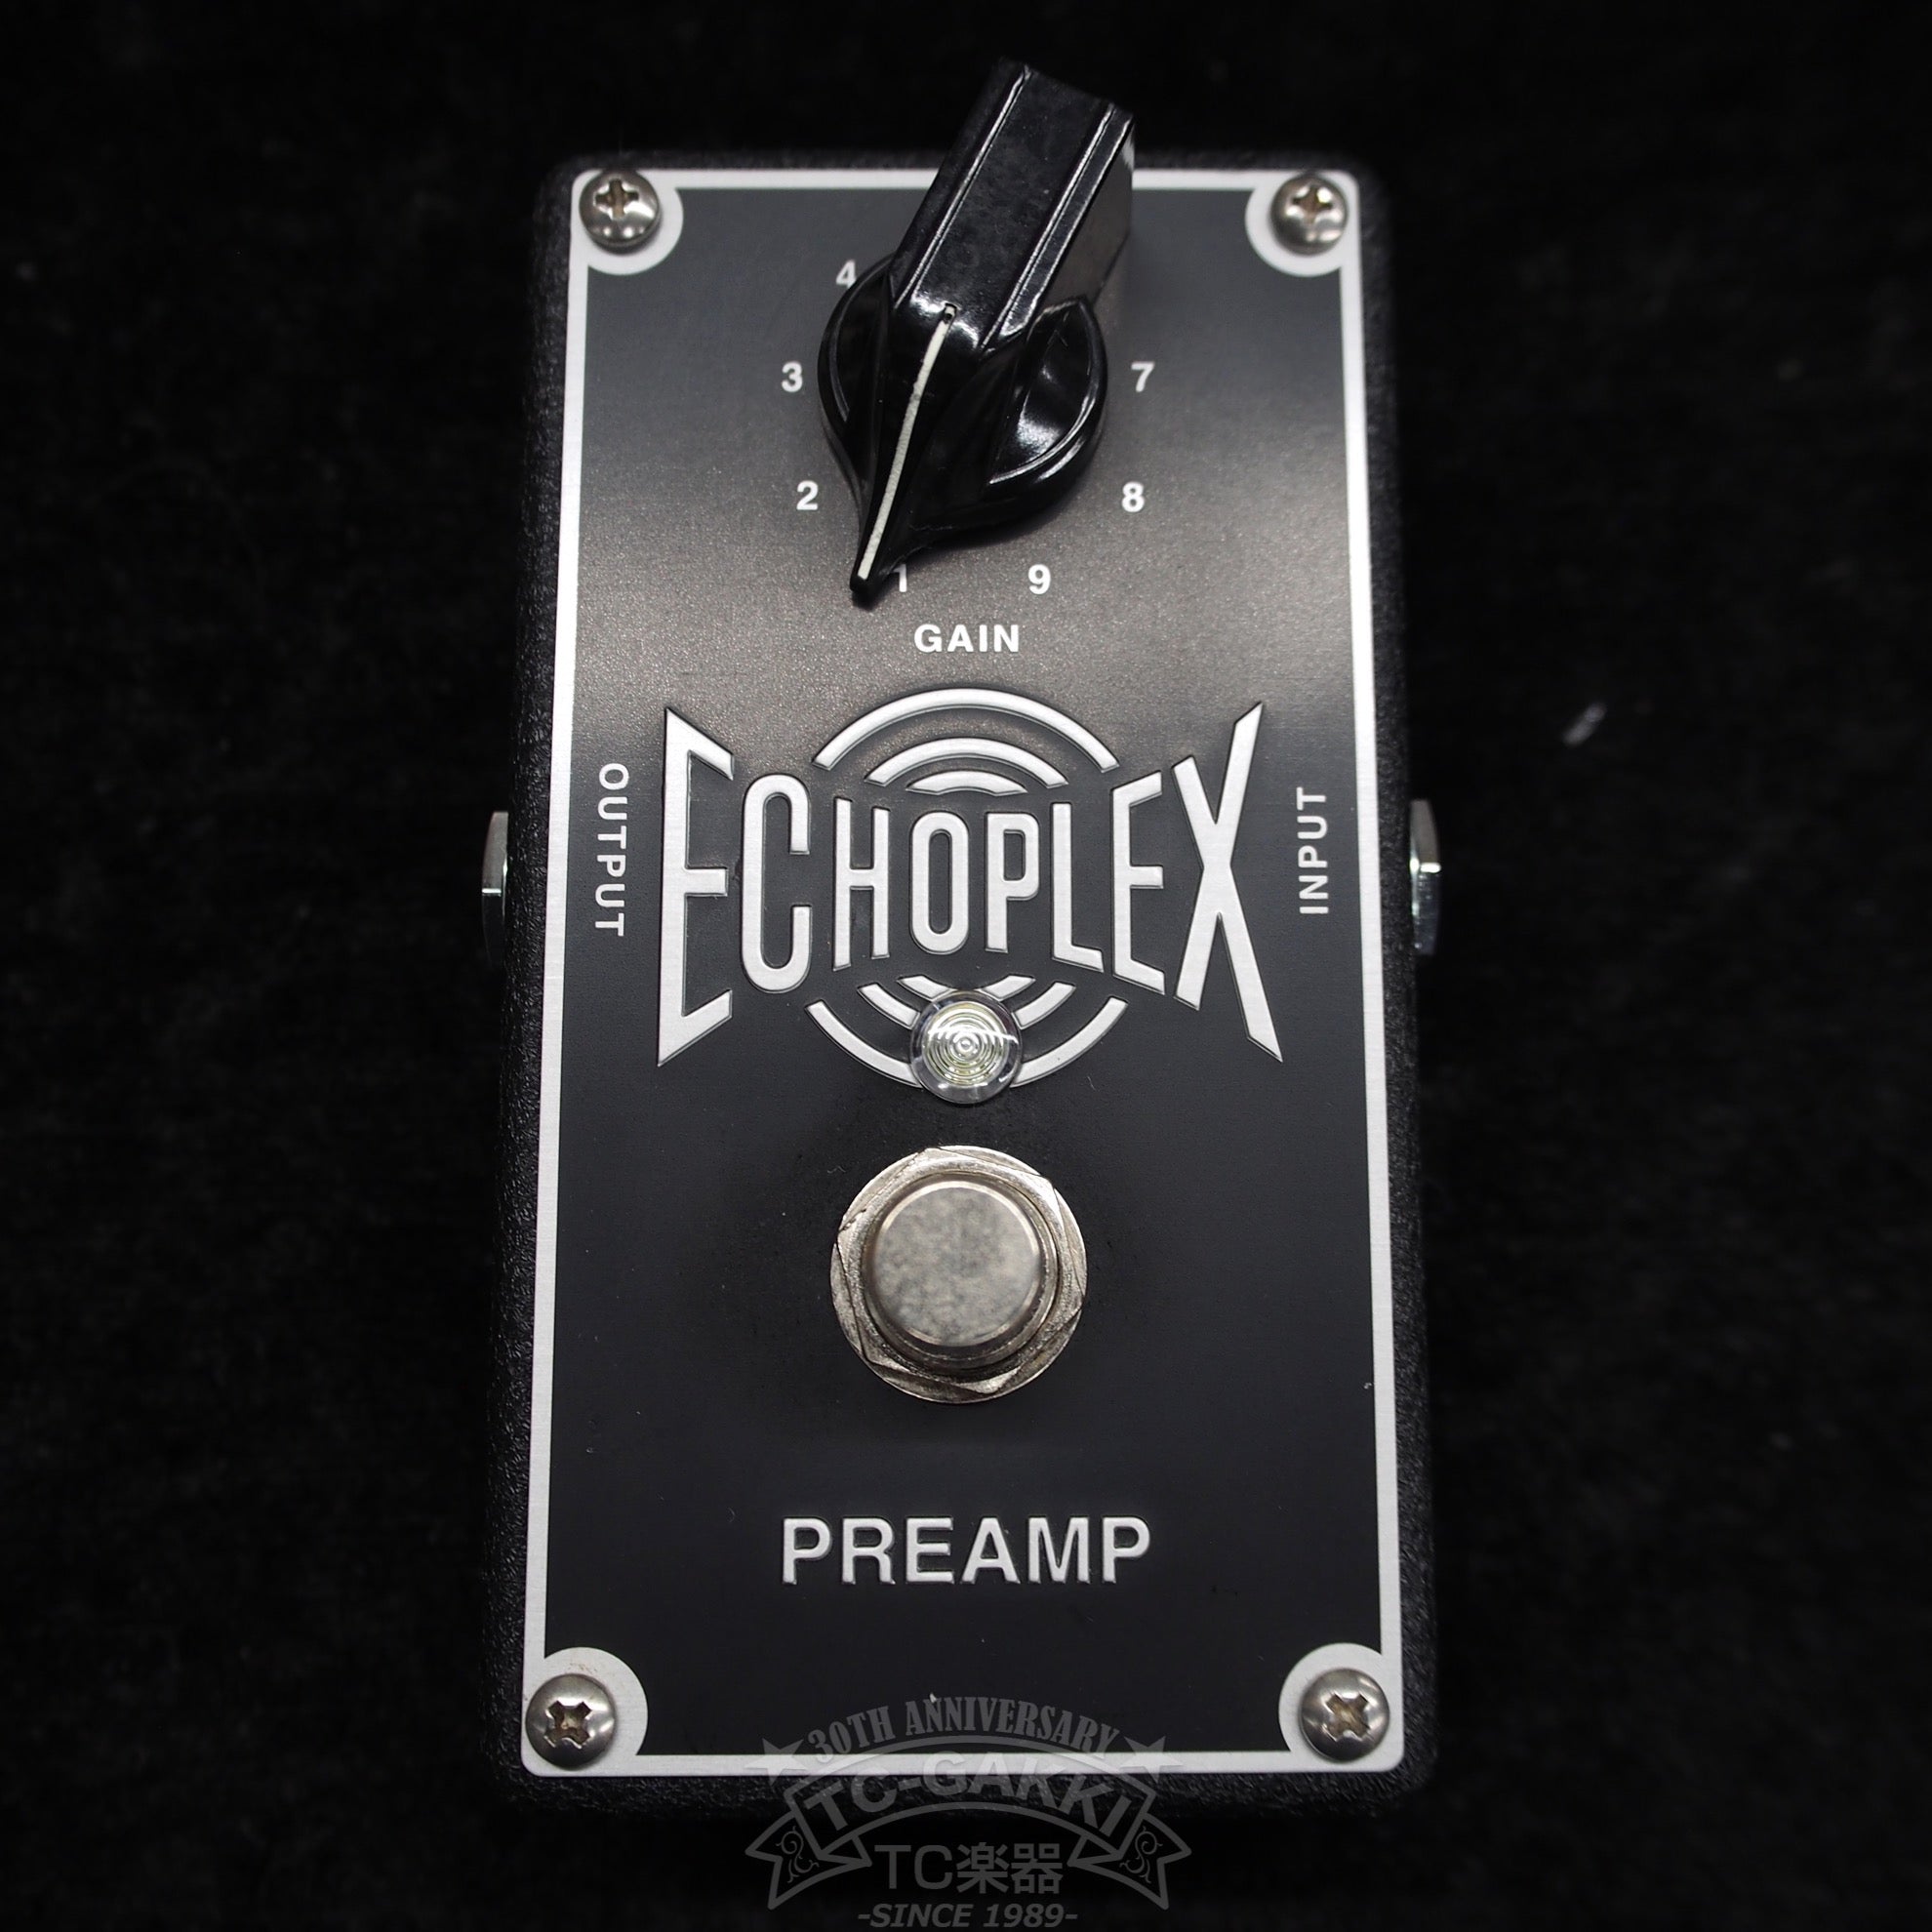 EP101 Echoplex Preamp